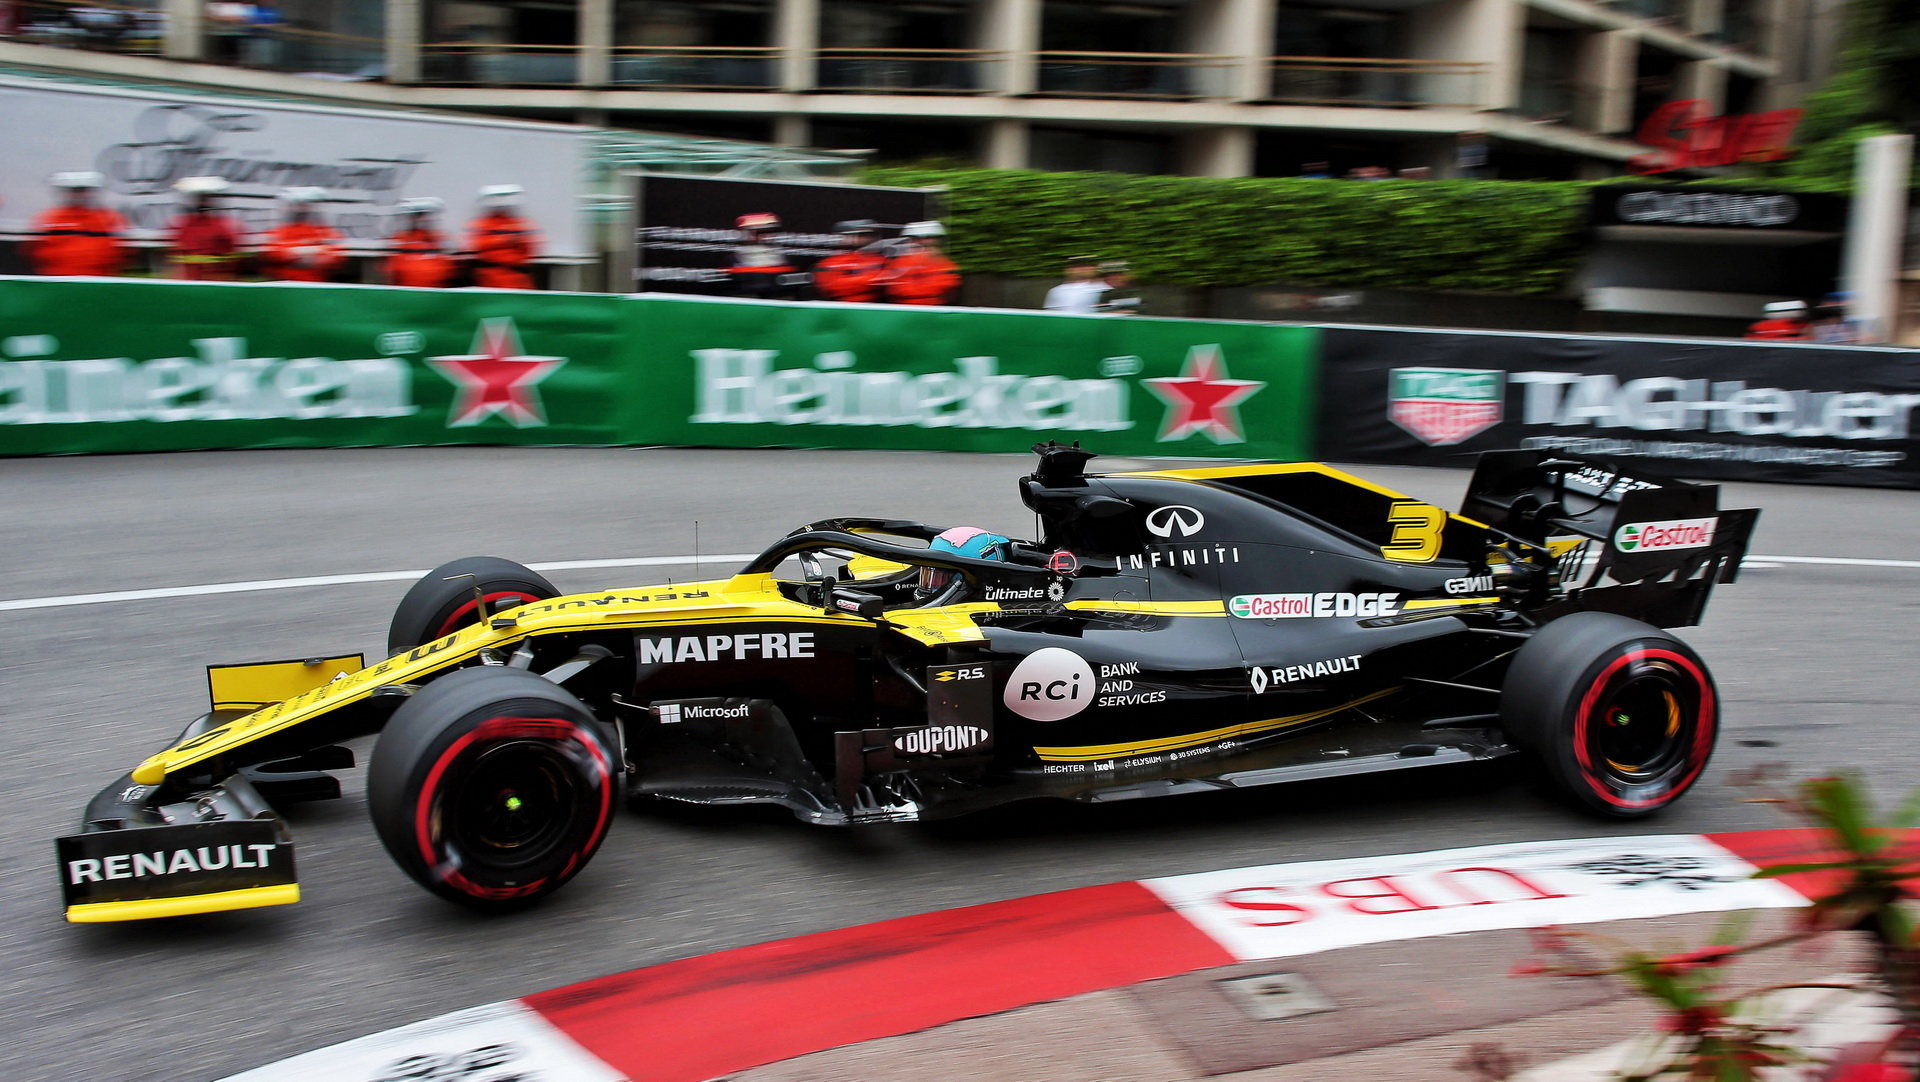 Daniel Ricciardo v tréninku v Monaku